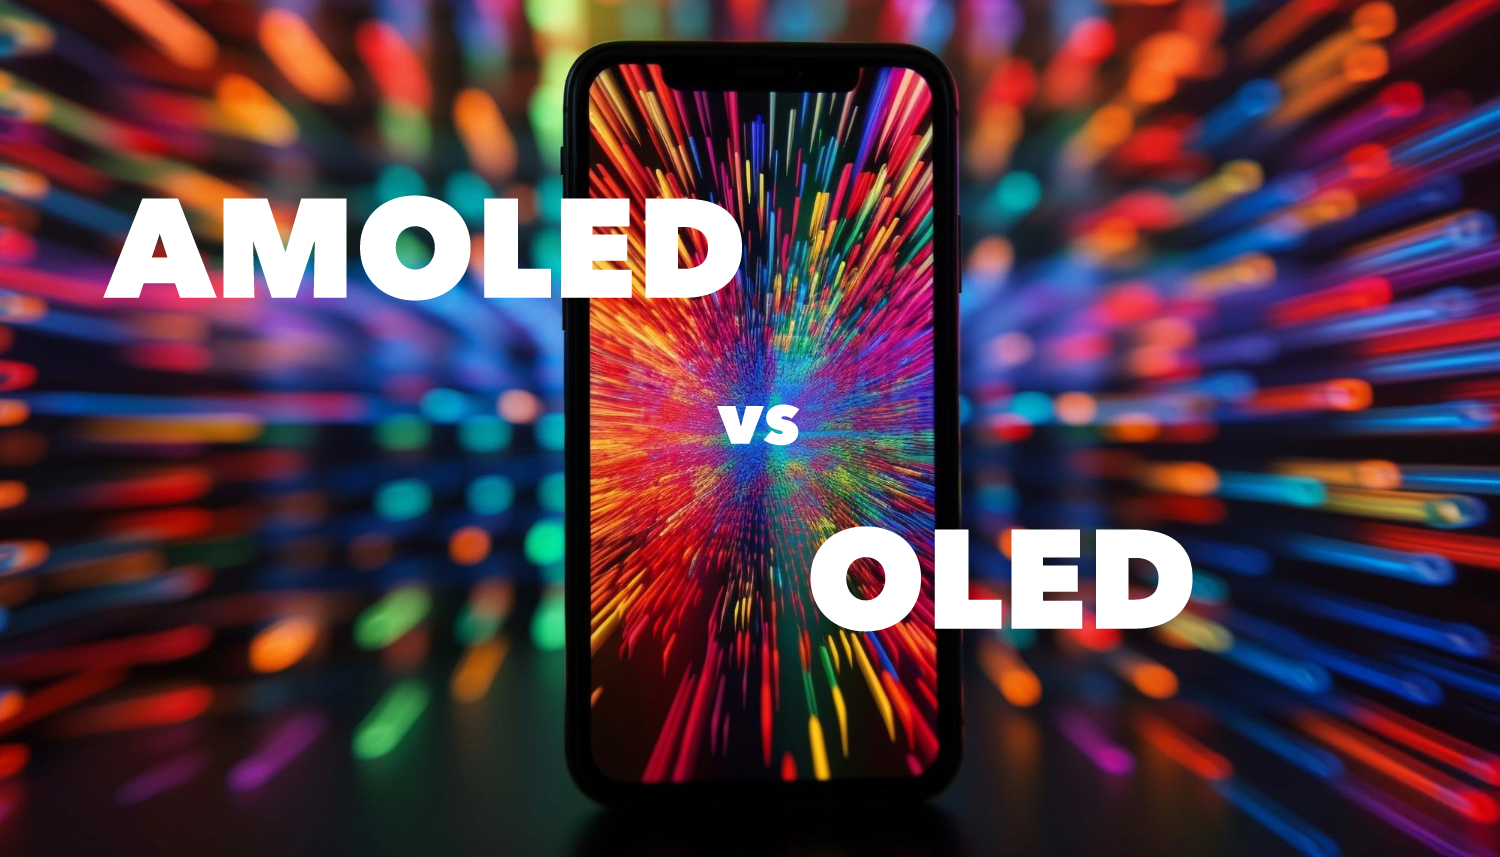 Se você está procurando um smartphone com uma tela de alta qualidade, OLED ou AMOLED são as tecnologias mais recomendadas.